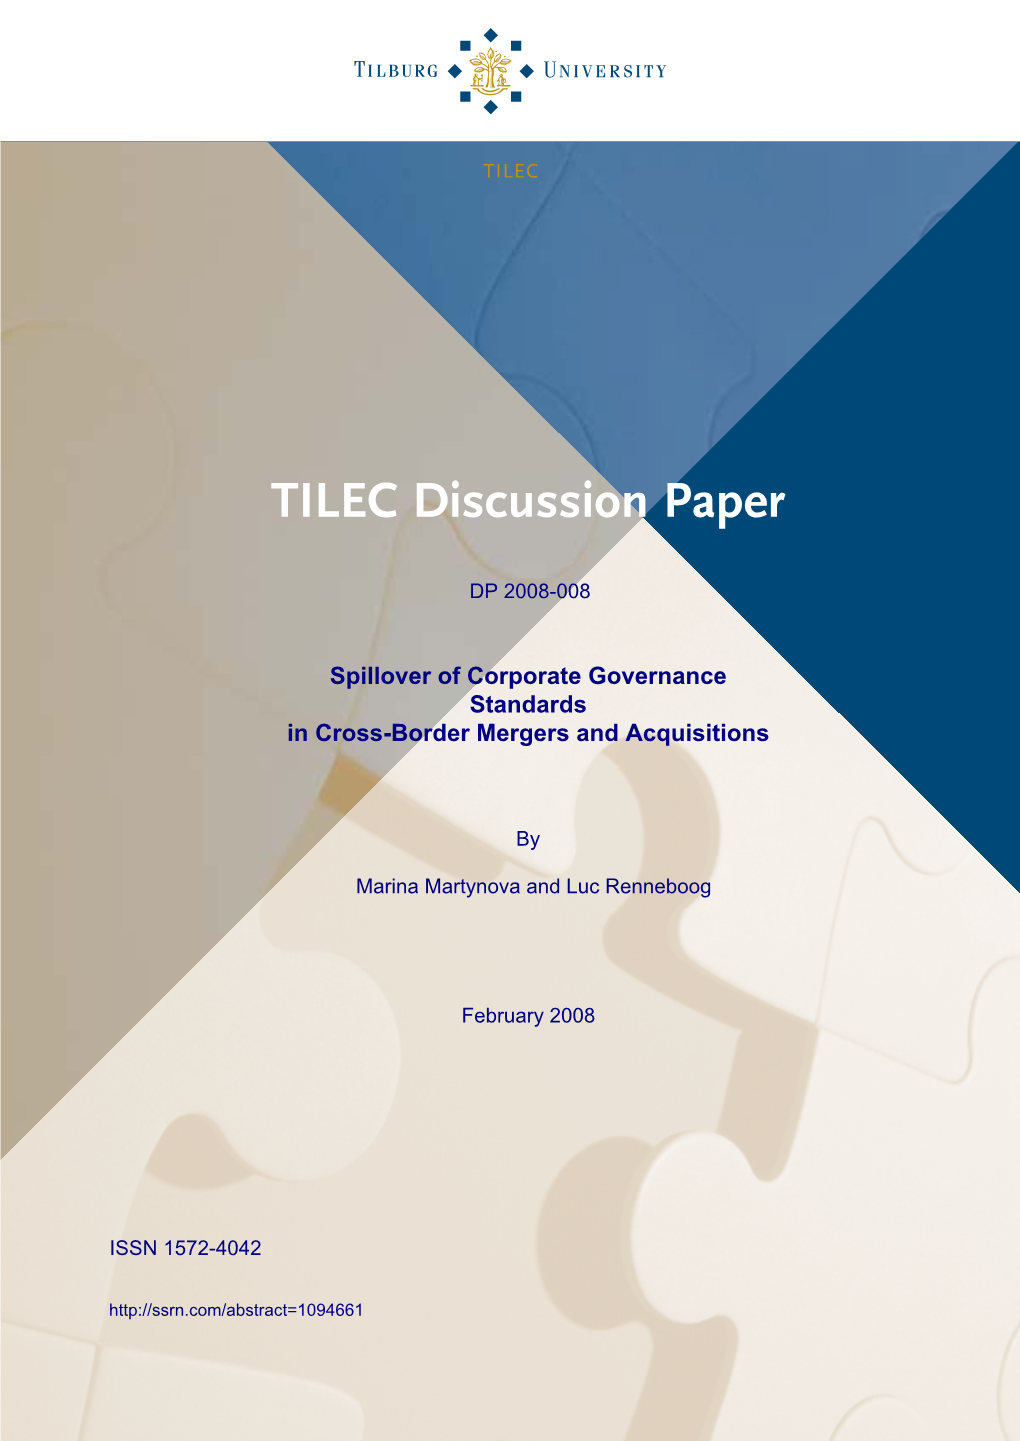 TILEC Disc Paper